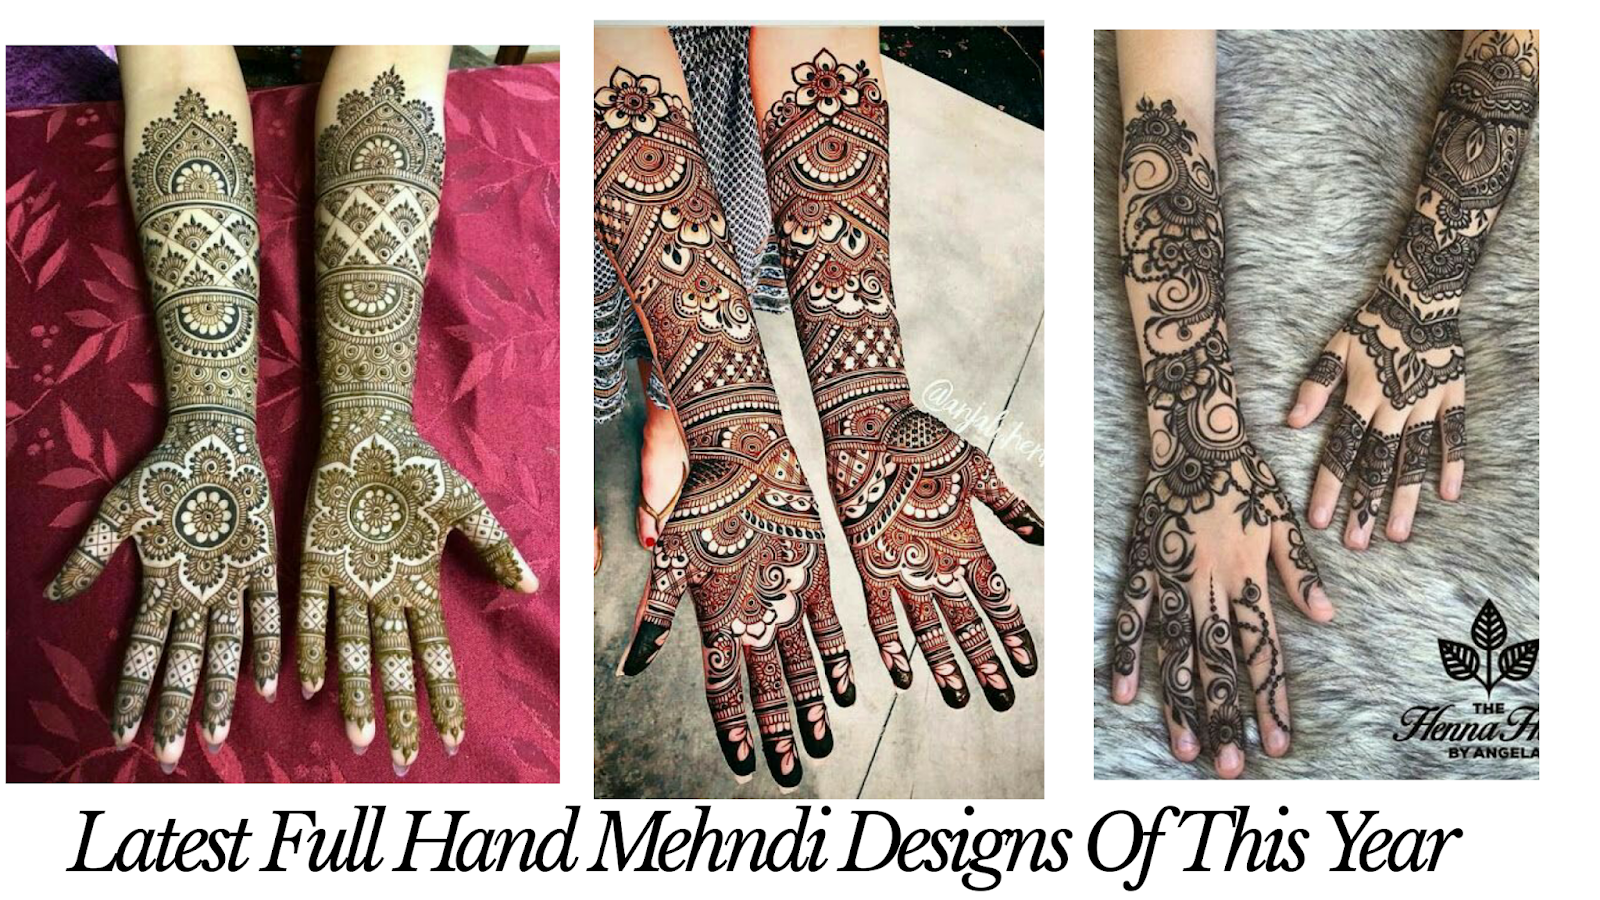 45 Latest Full Hand Mehndi Designs New Full Mehndi Design To Try In 19 Bling Sparkle